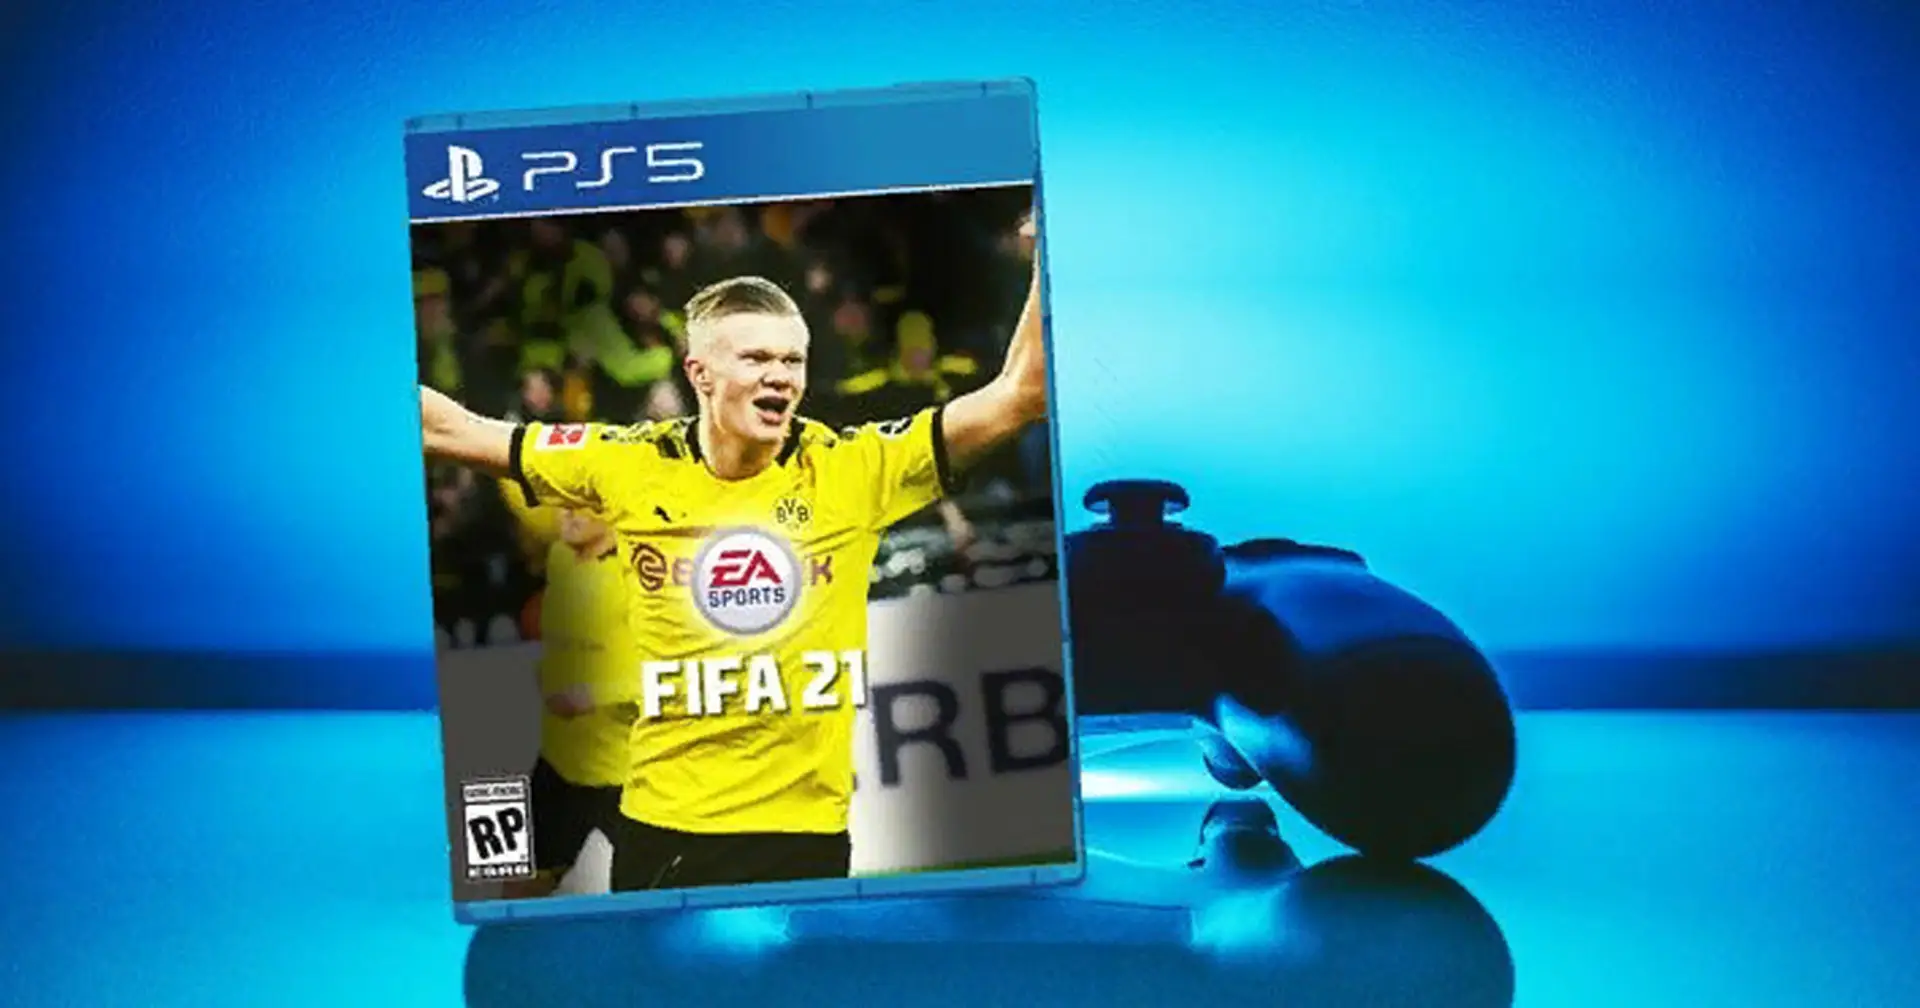 Erling Haaland als Cover-Star für FIFA 21? Die angeblichen Leaks deuten dies an